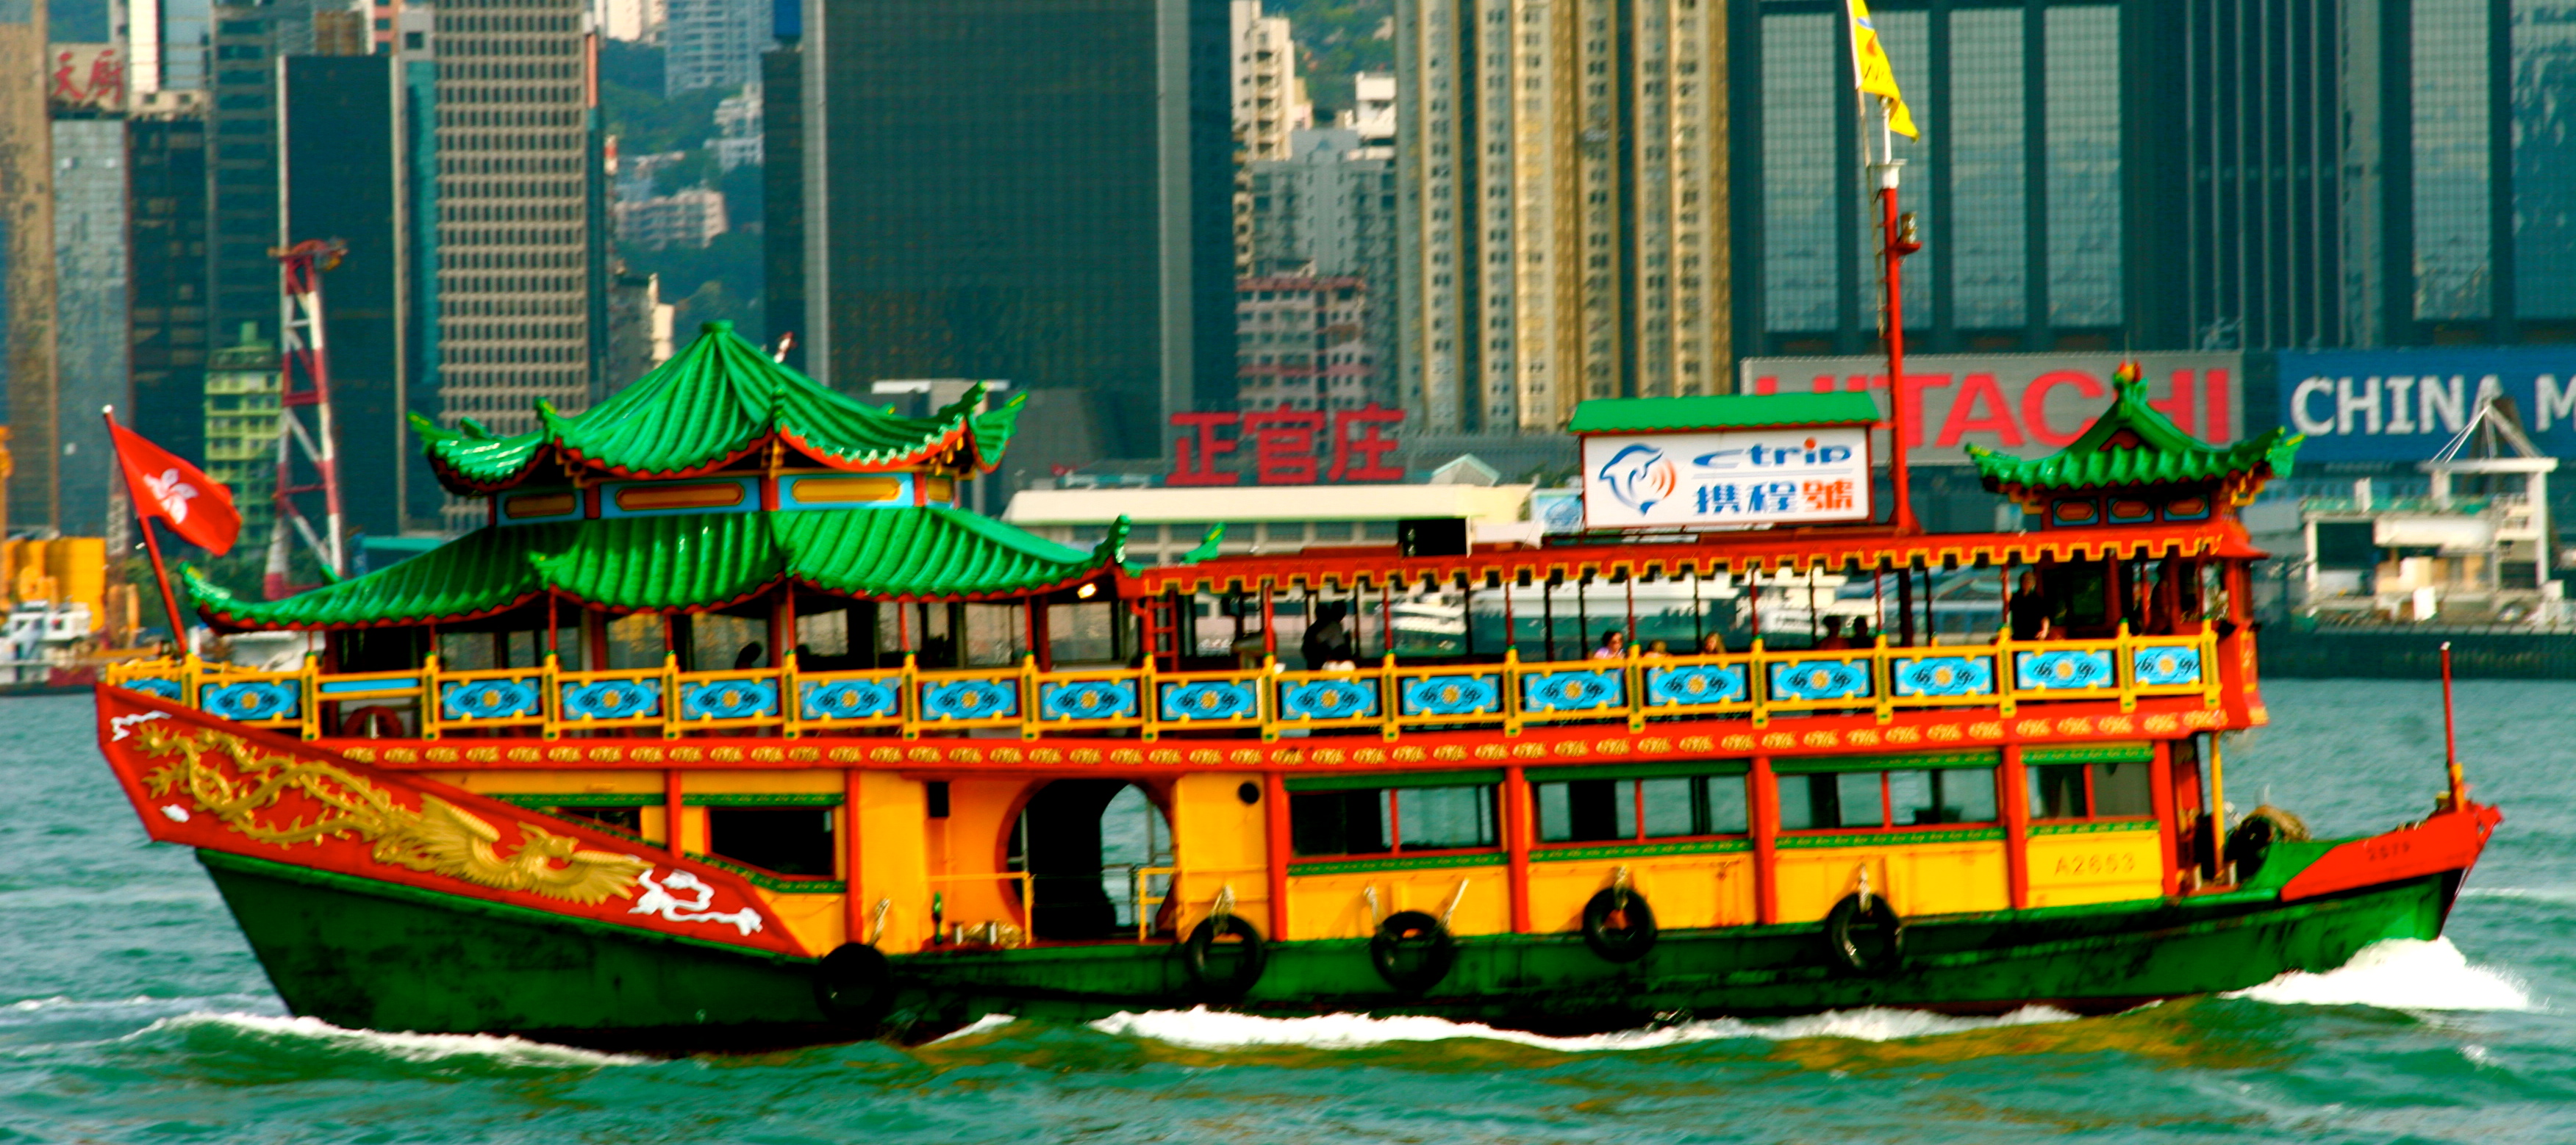 Hong Kong: An Inspiring Ride on the Star Ferry - Jetset Times ...